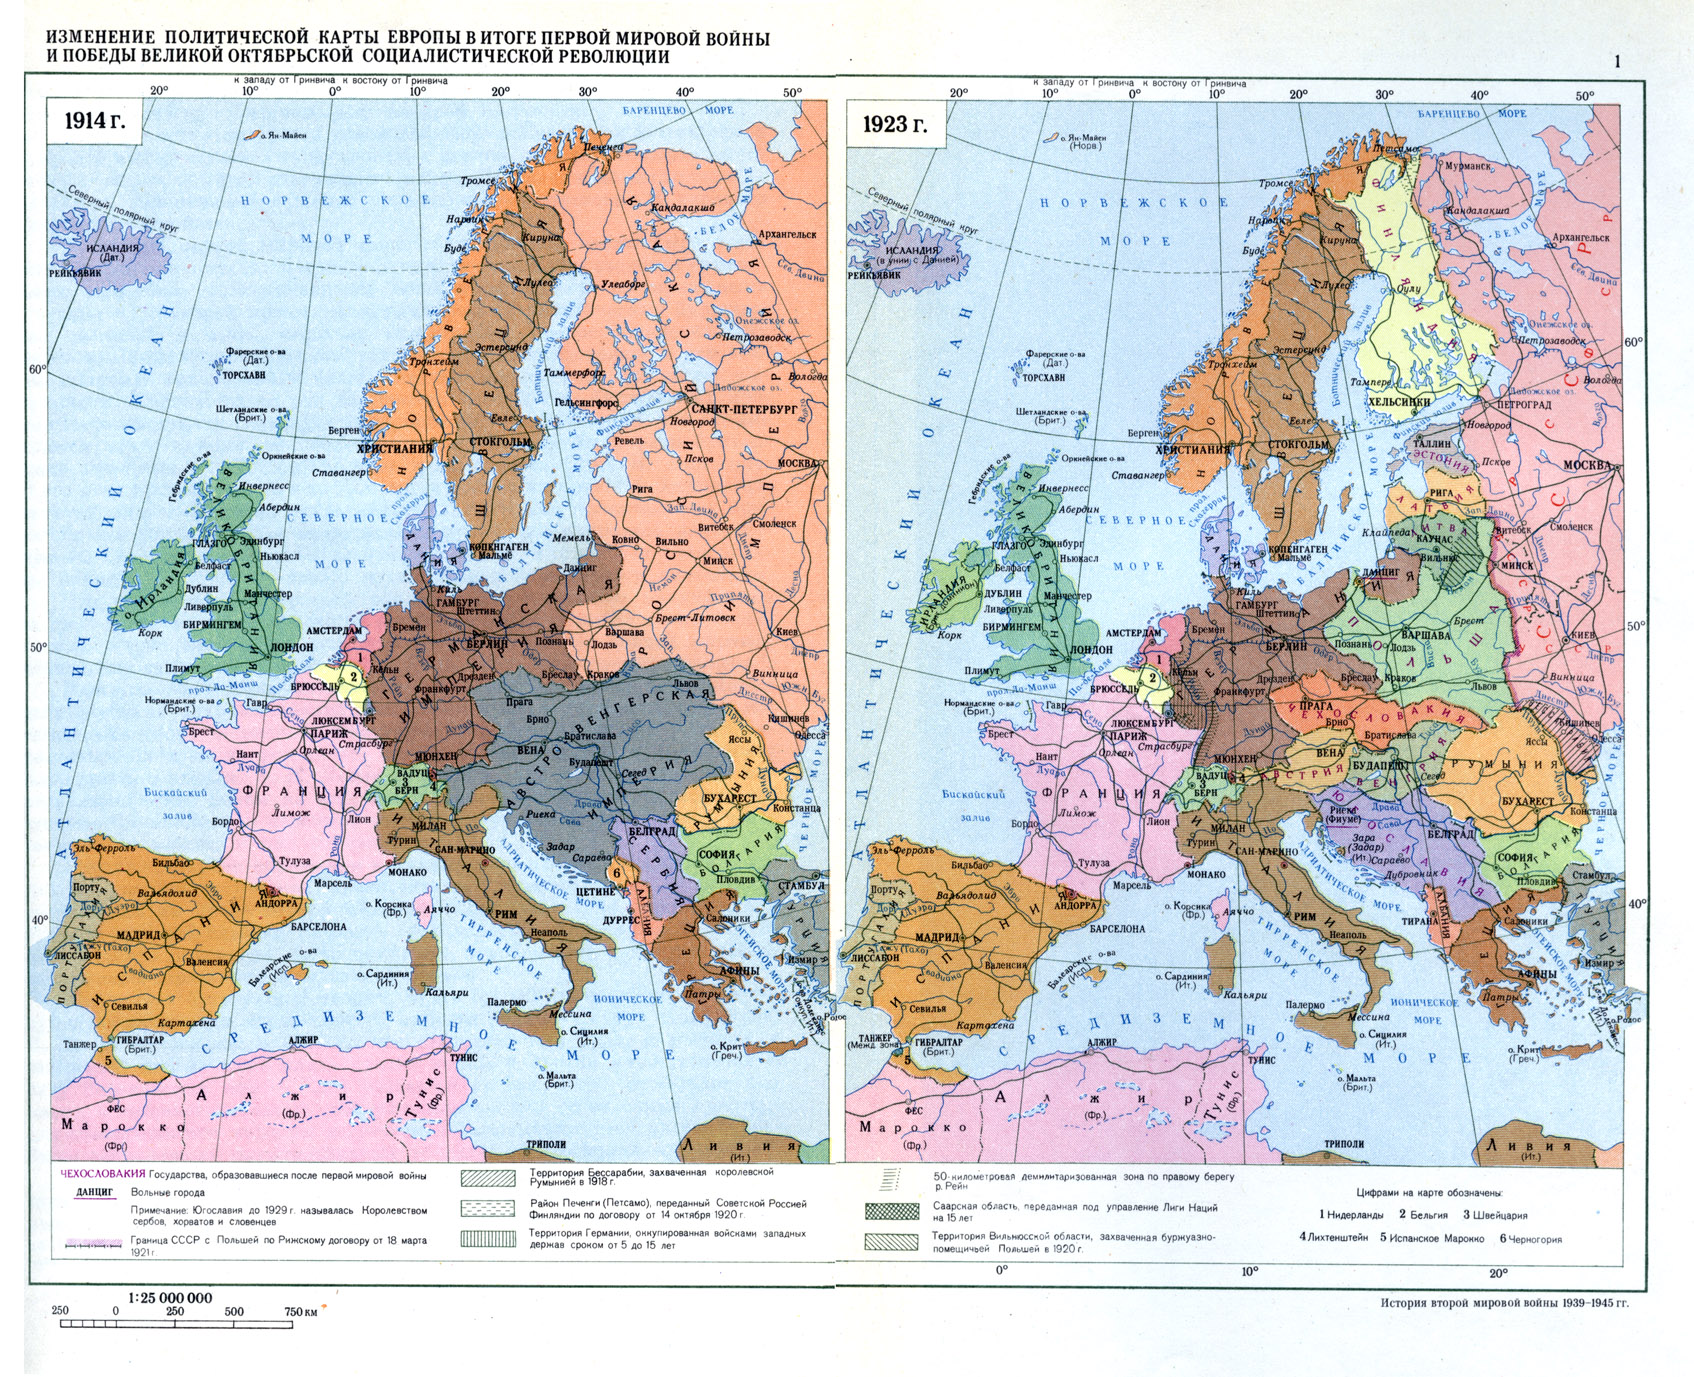 Карты WWII из Истории второй мировой войны 1939 -1945 (В двенадцати томах)